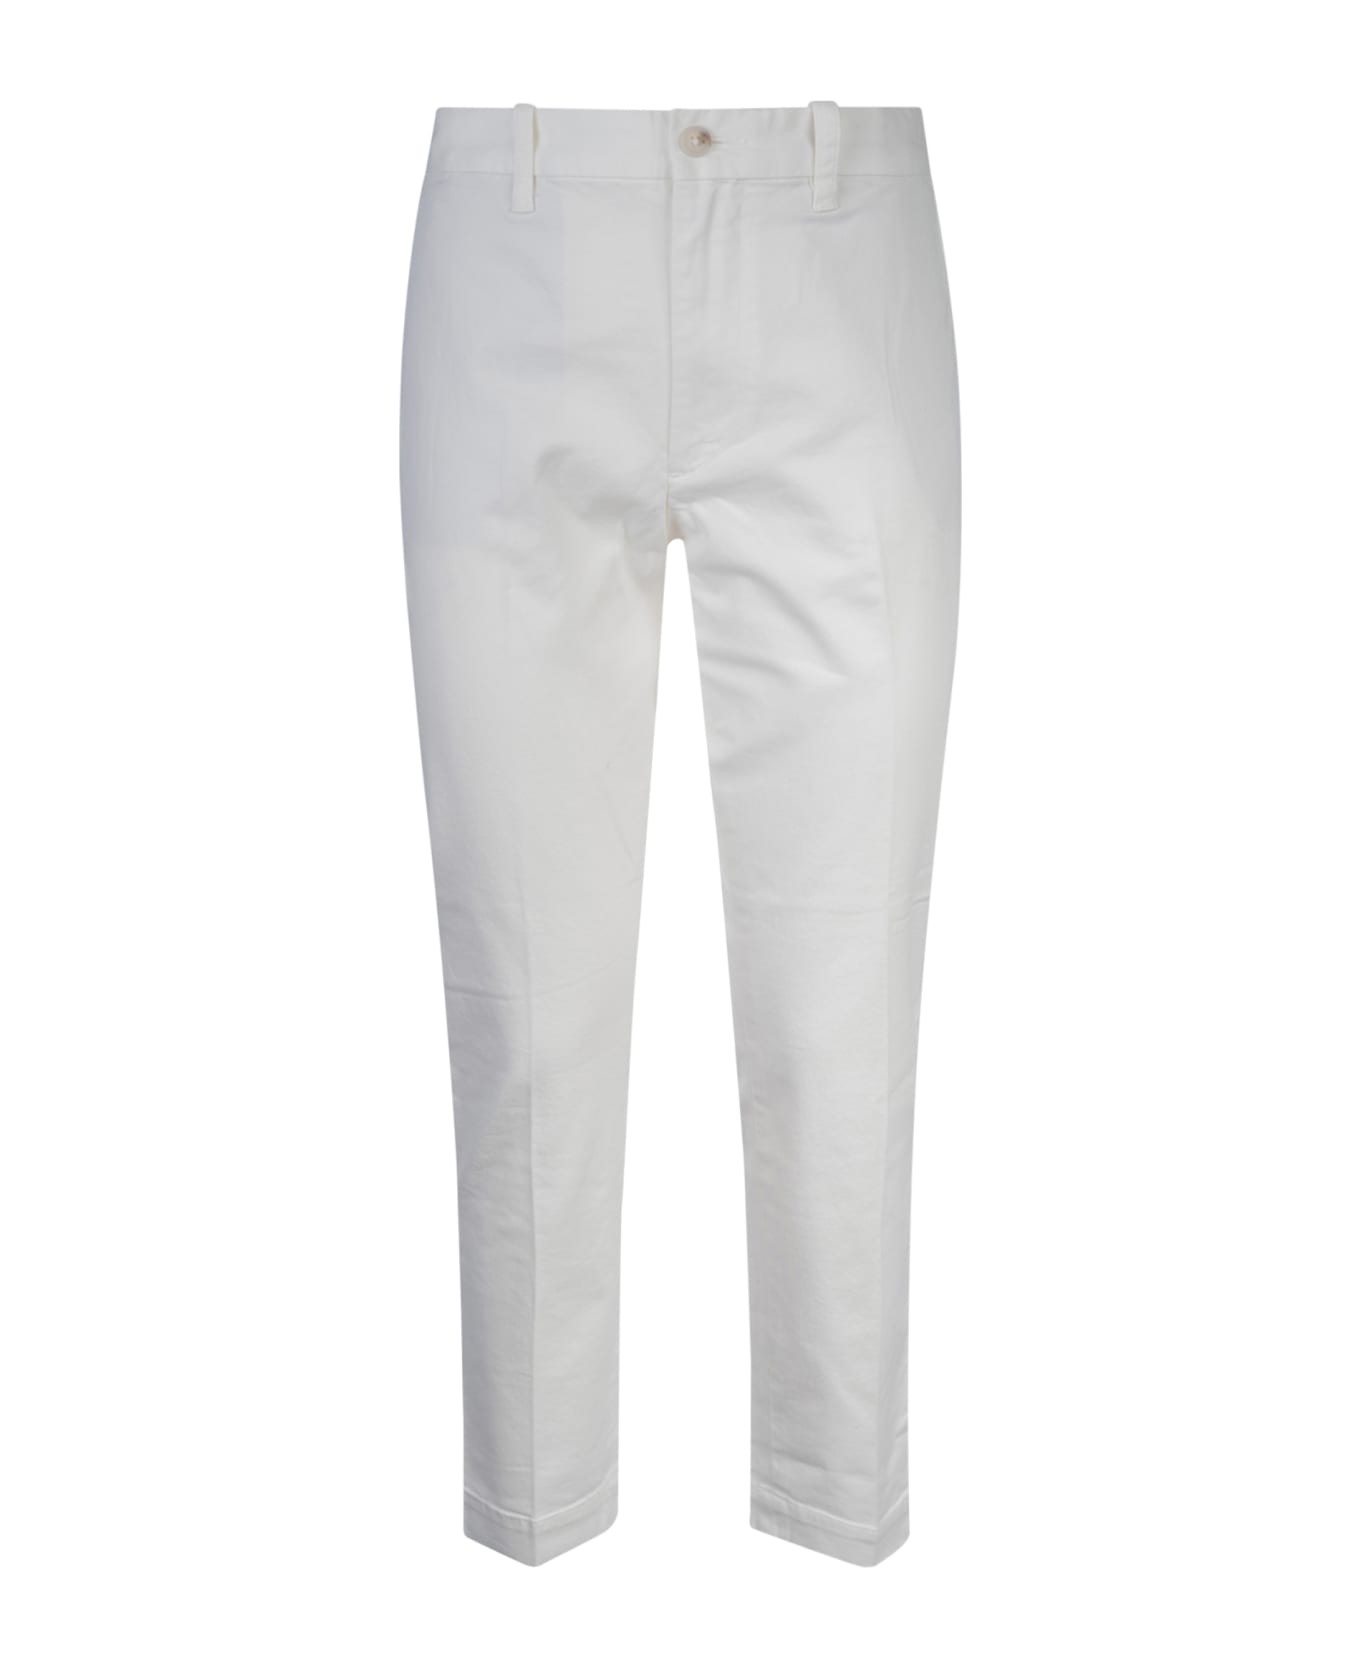 Ralph Lauren Buttoned High Waist Trousers - Warm White